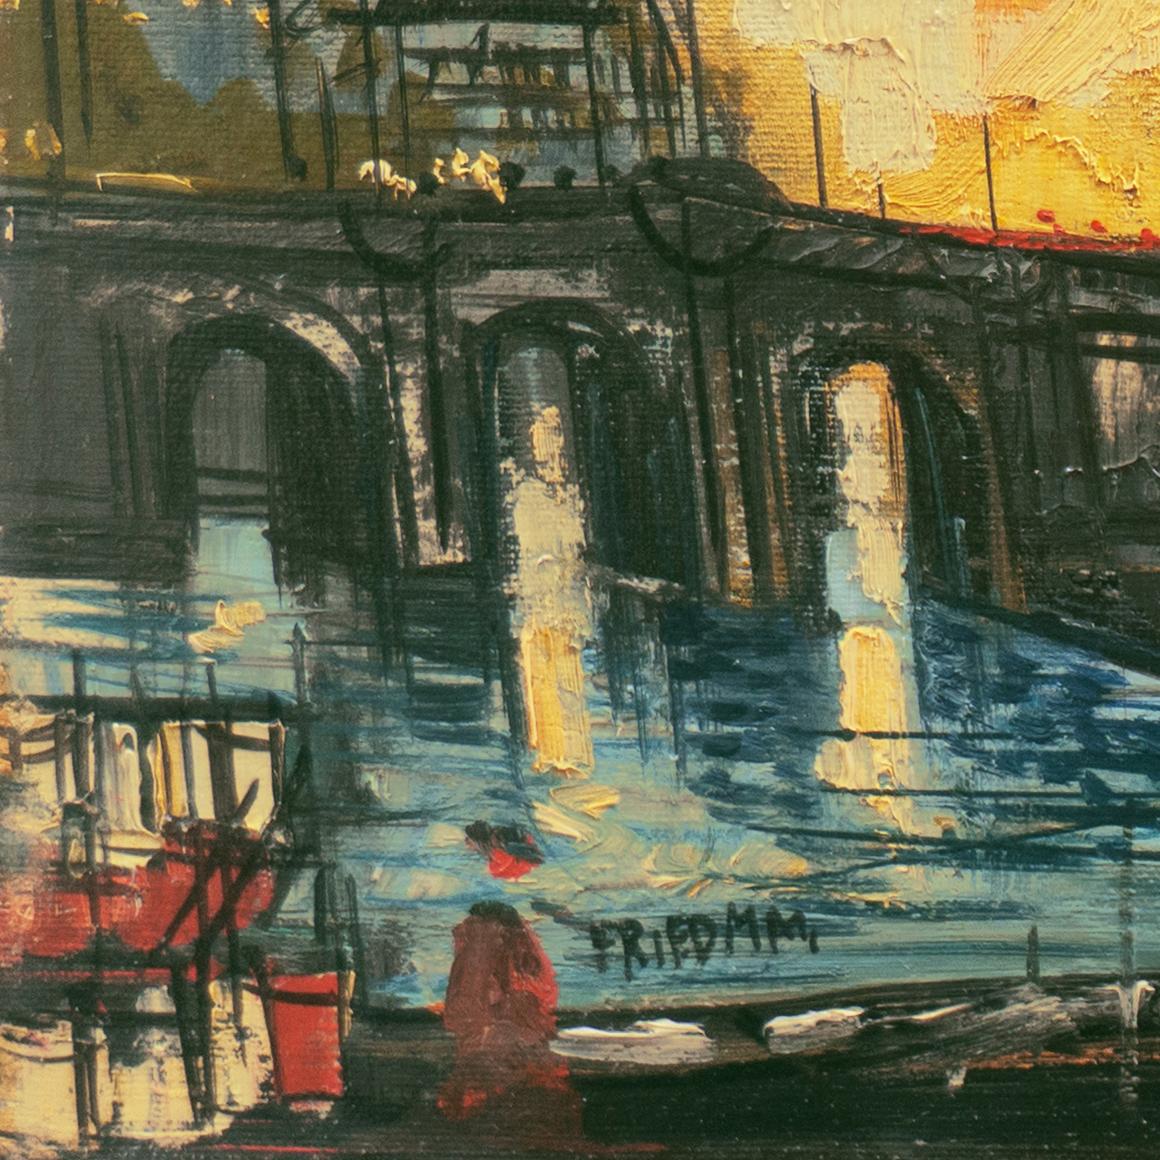 'Sunset over Notre-Dame', French Post-Impressionist Oil, Île de la Cité, Paris - Painting by Friedman